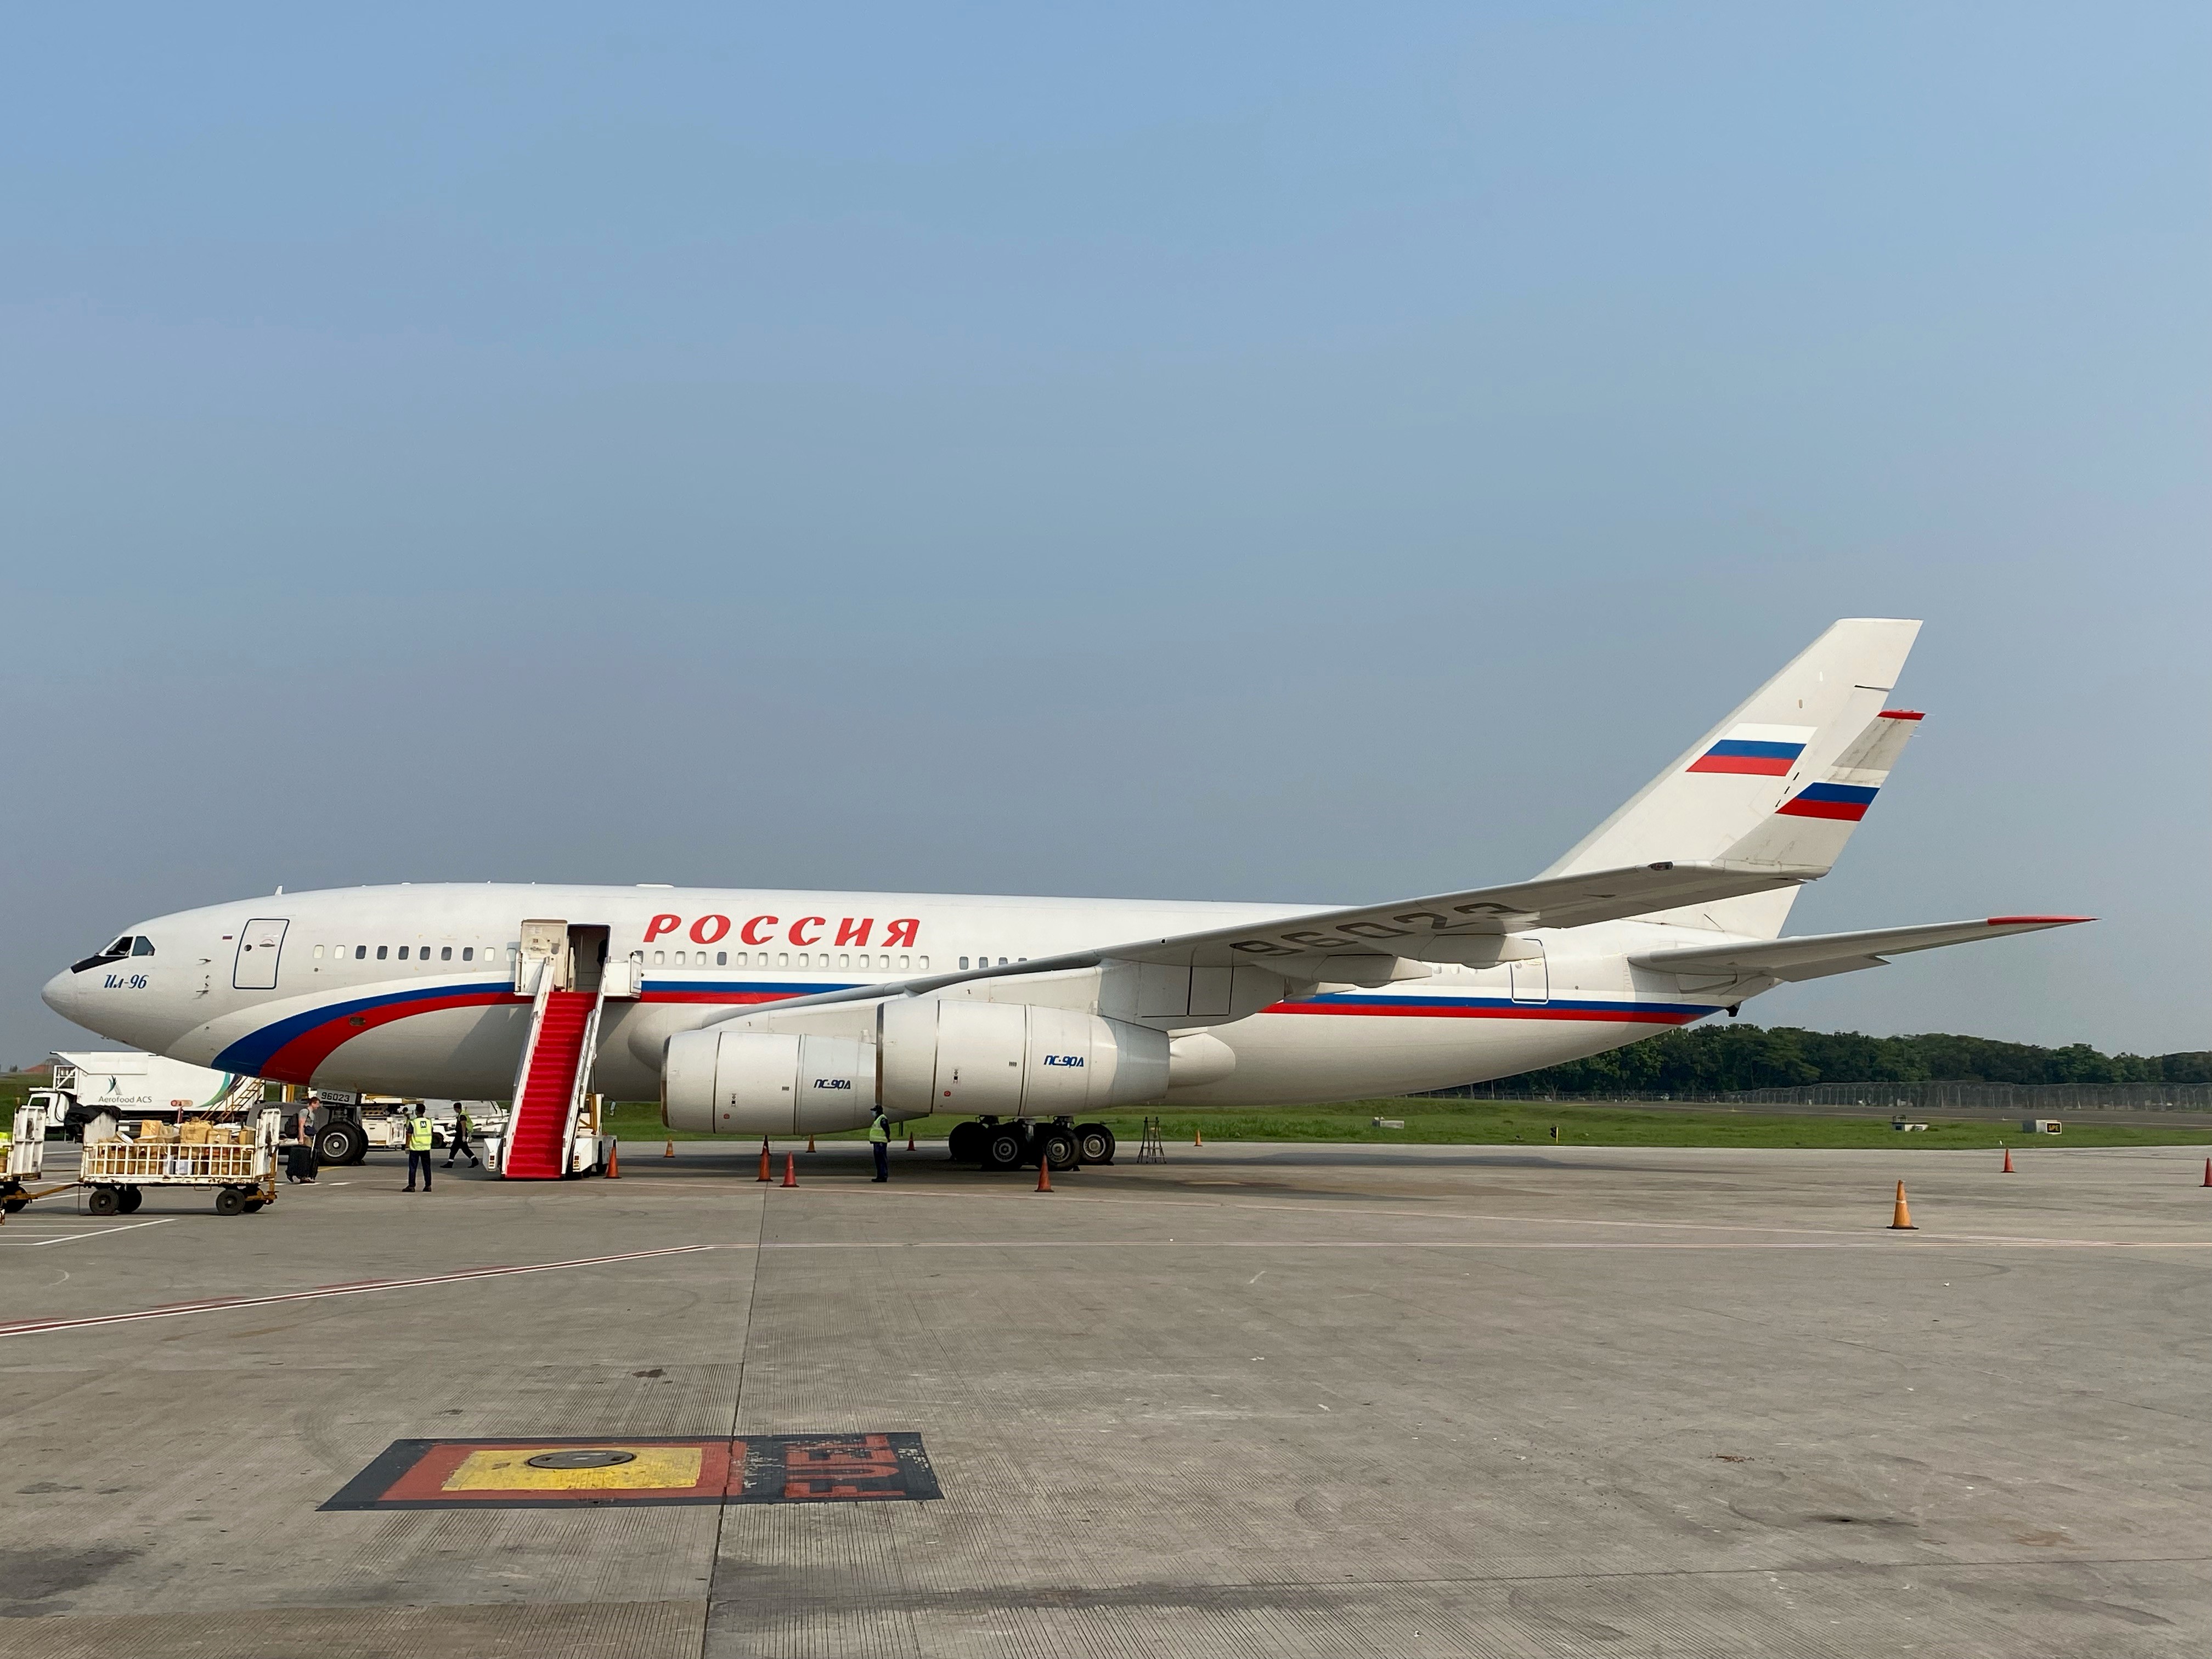 Russian diplomatic flight on tarmac at Jakarta